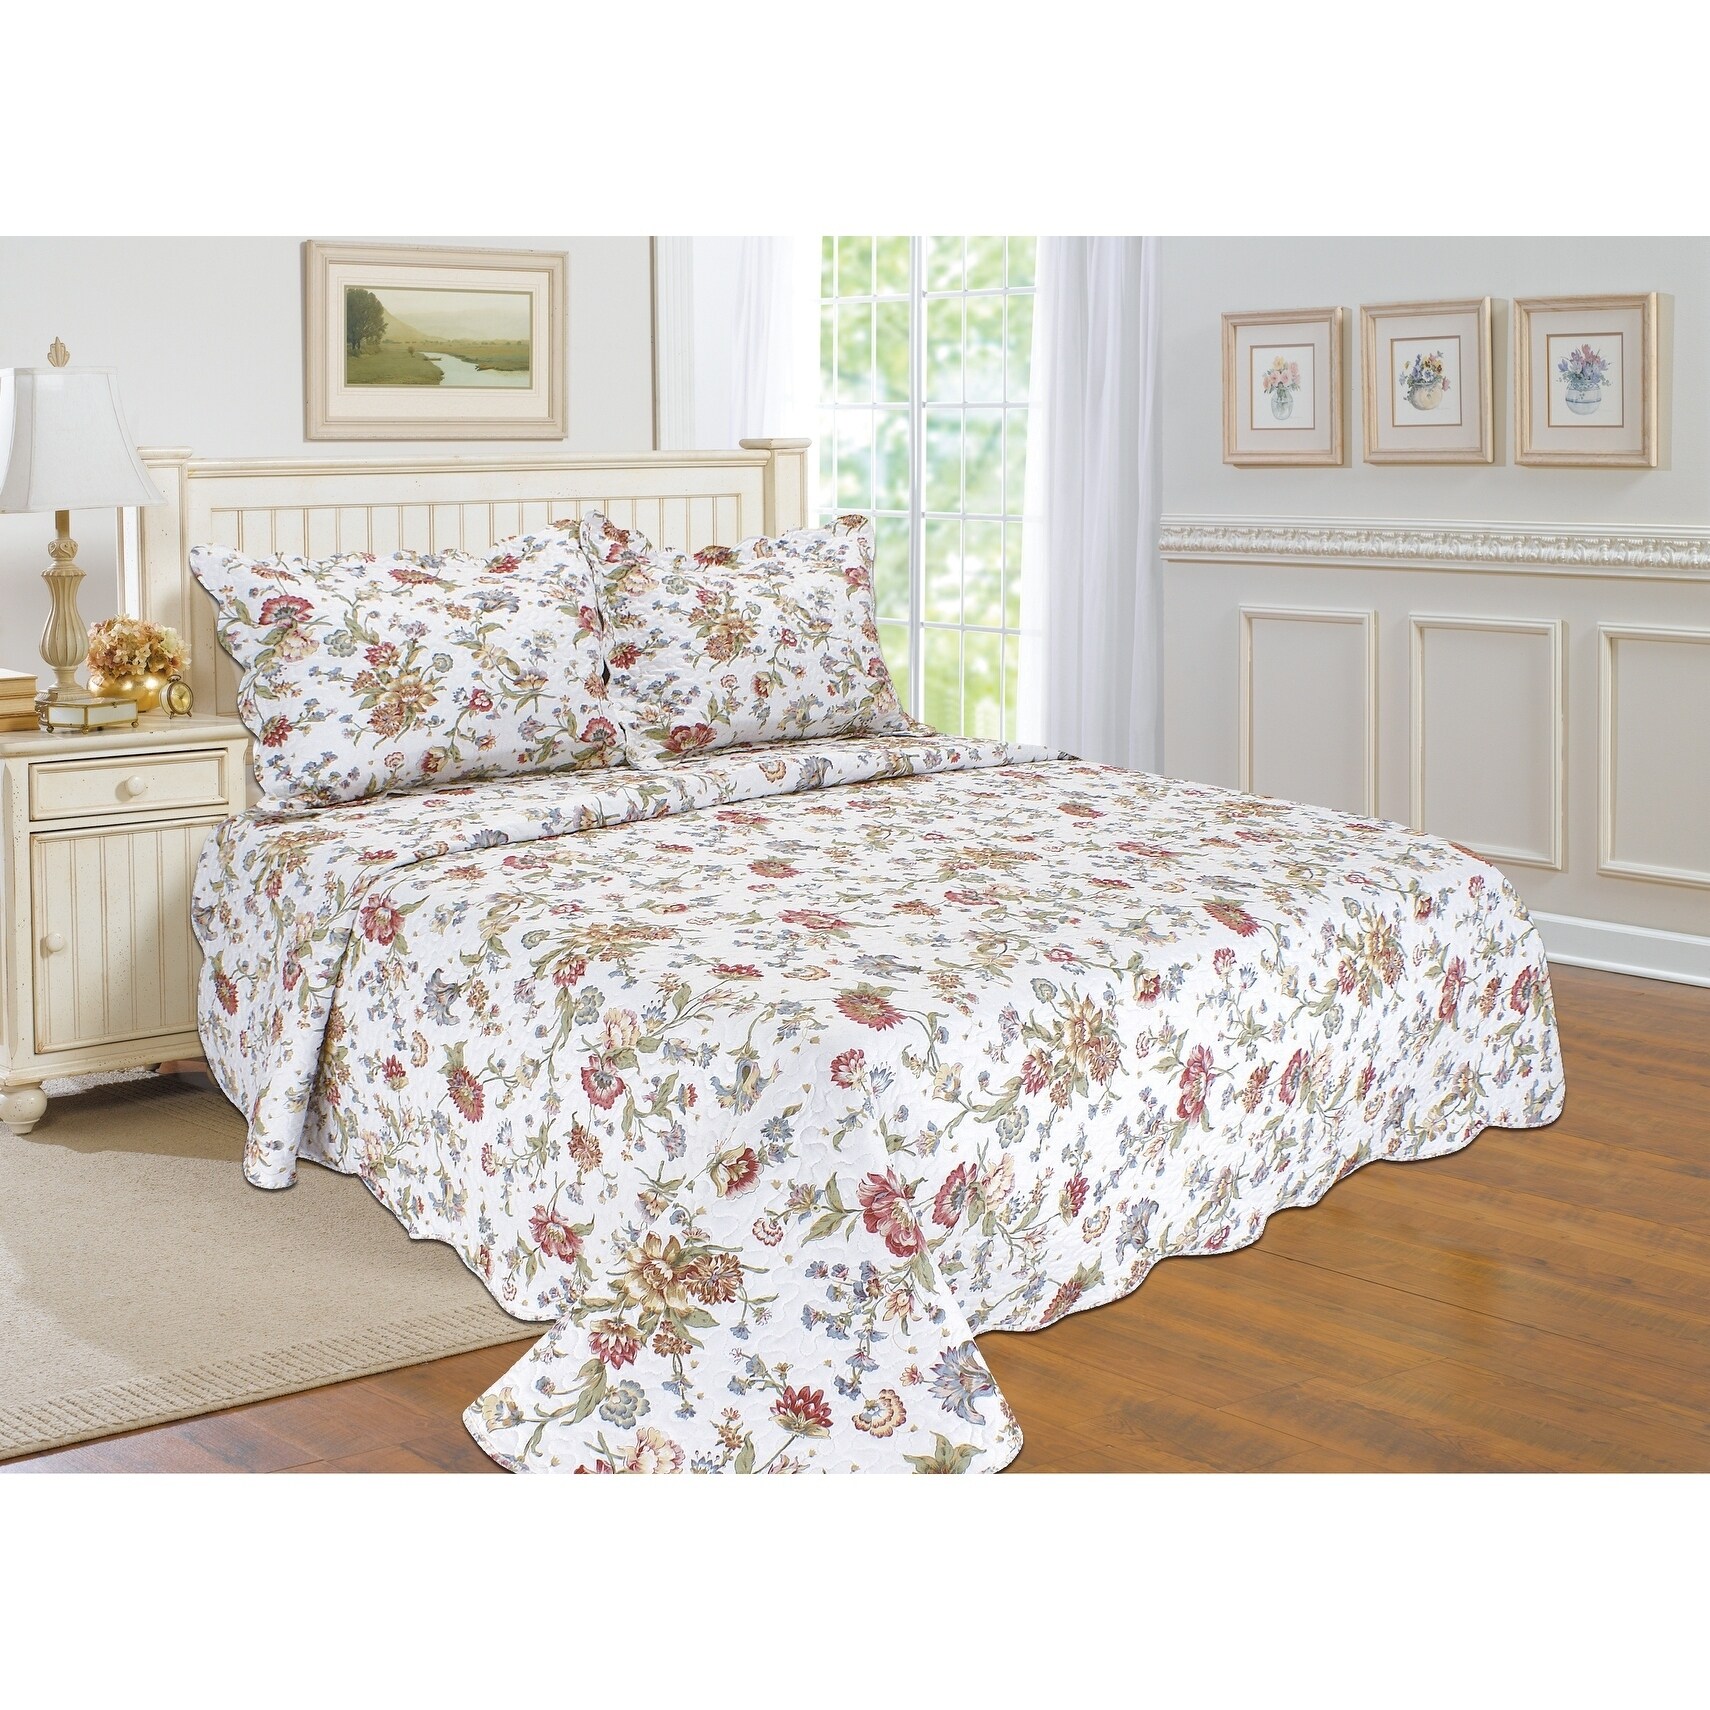 complete bed linen sets